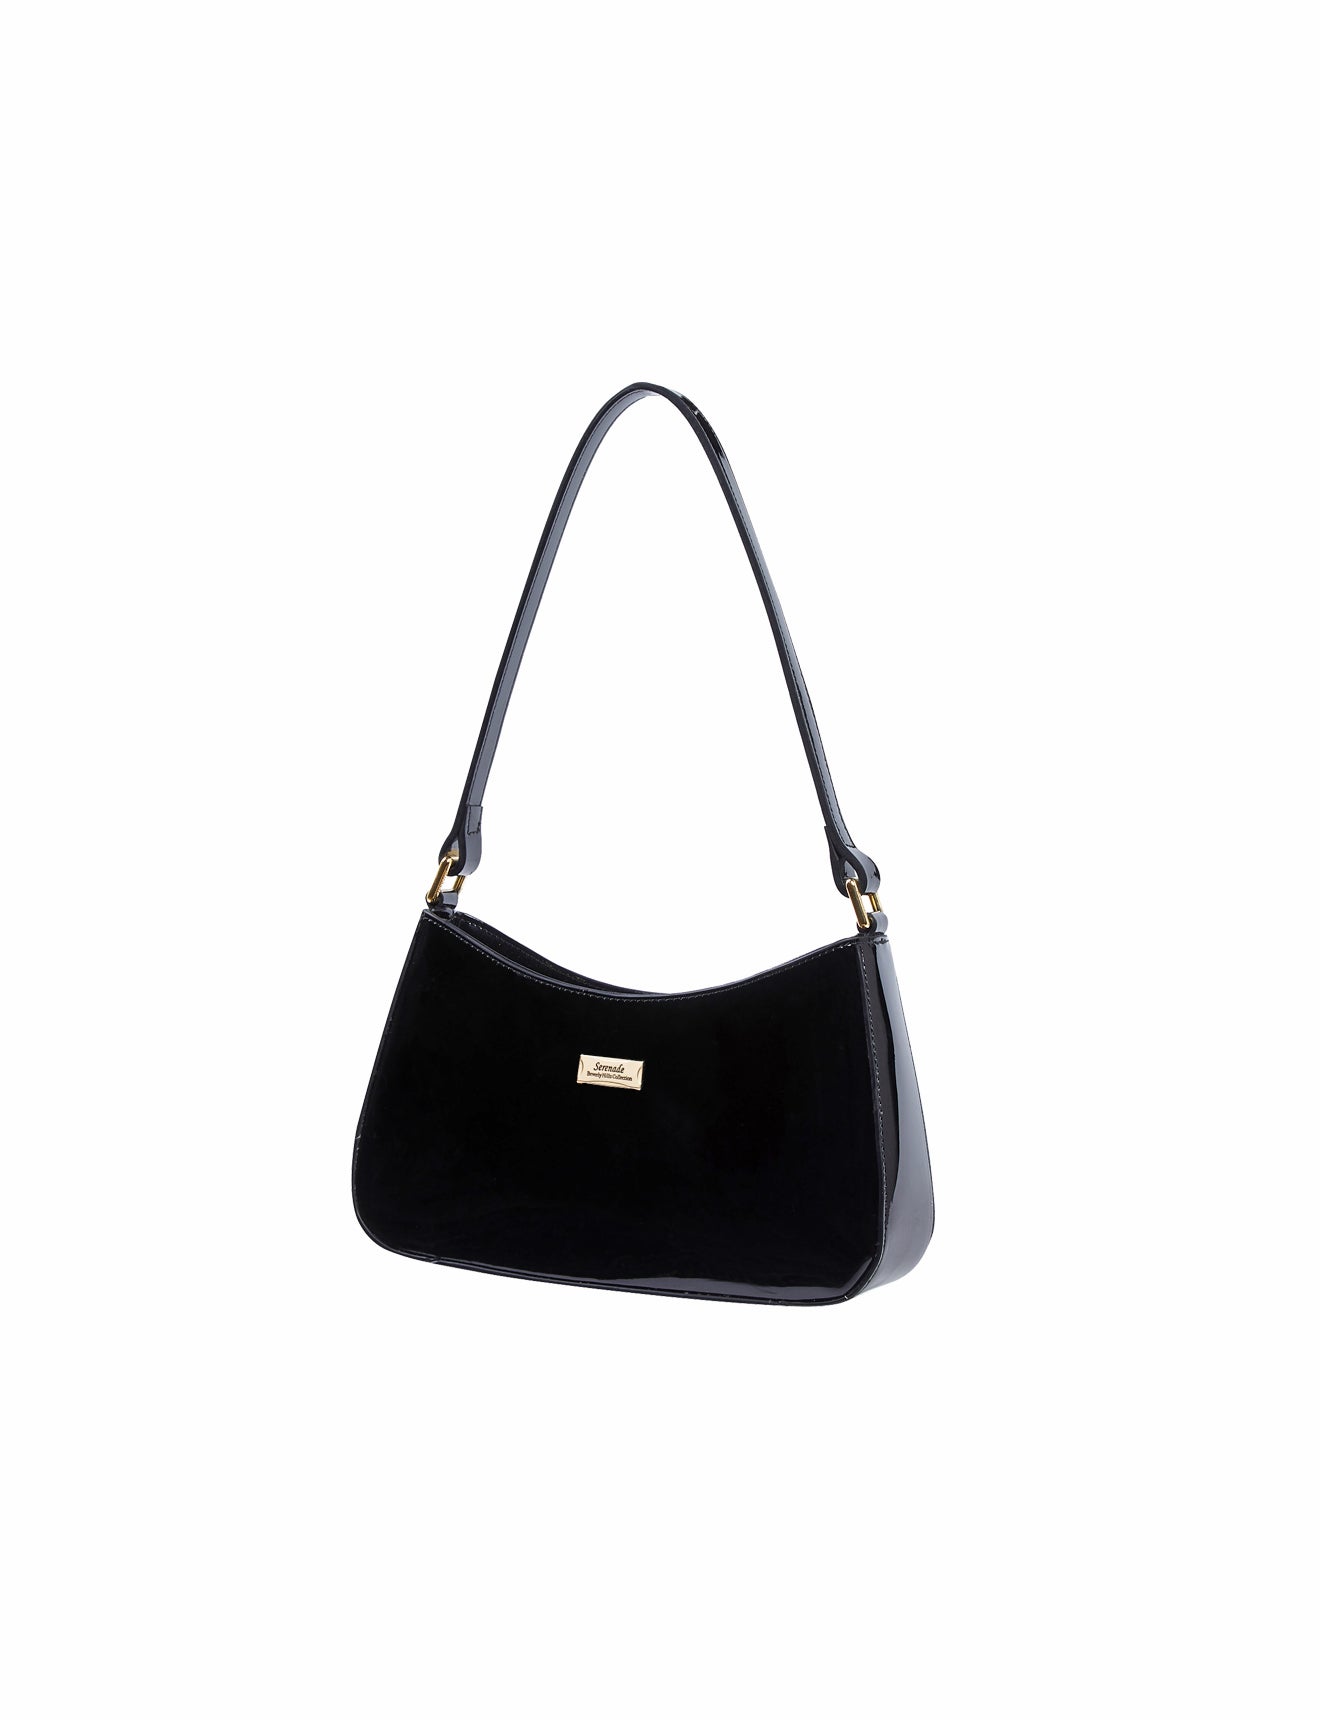 Serenade - Allura SV1-0821 Patent Leather Handbag - Black - 0